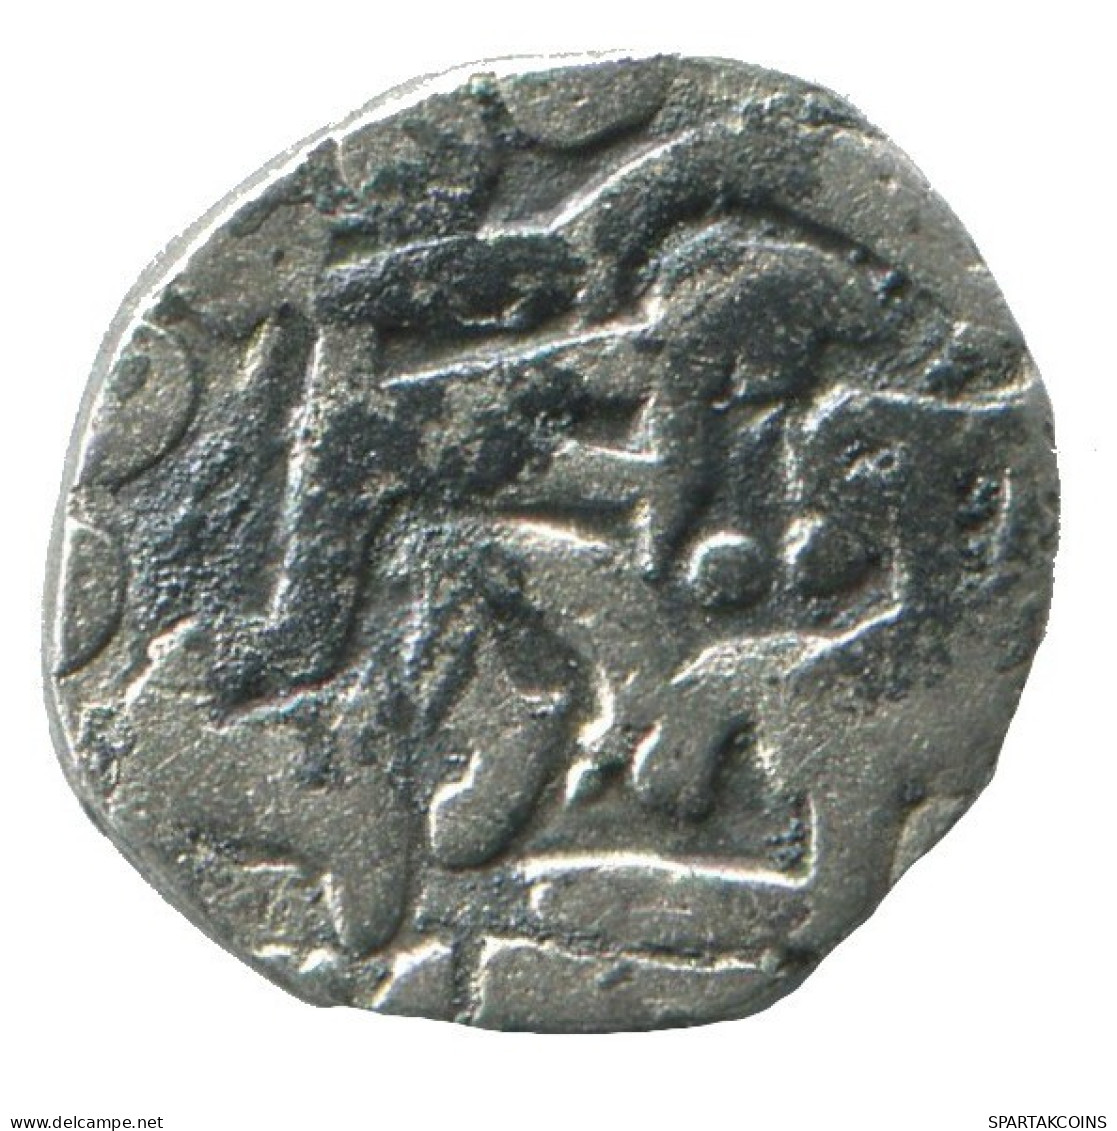 GOLDEN HORDE Silver Dirham Medieval Islamic Coin 0.6g/12mm #NNN2034.8.U.A - Islamiques